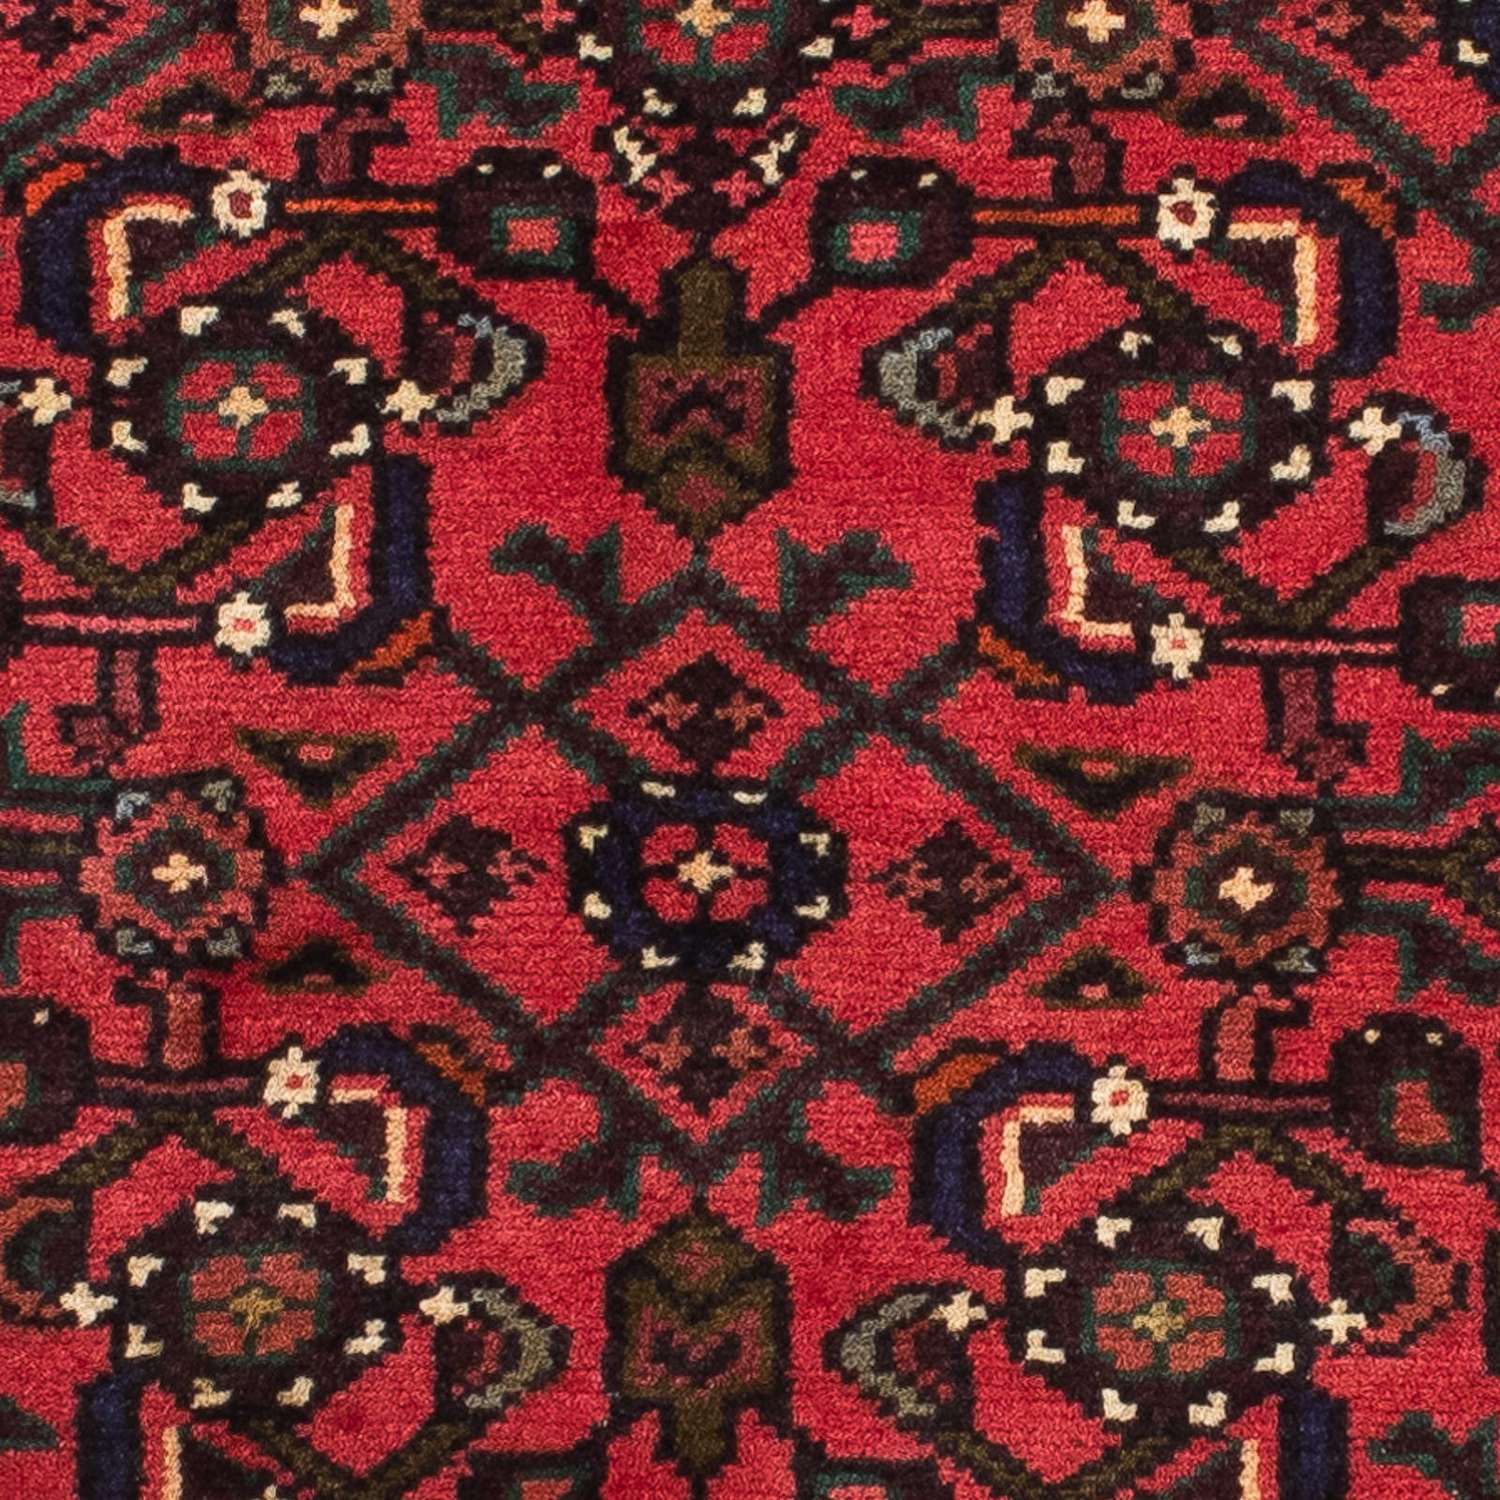 Runner Perský koberec - Nomádský - 200 x 70 cm - tmavě červená